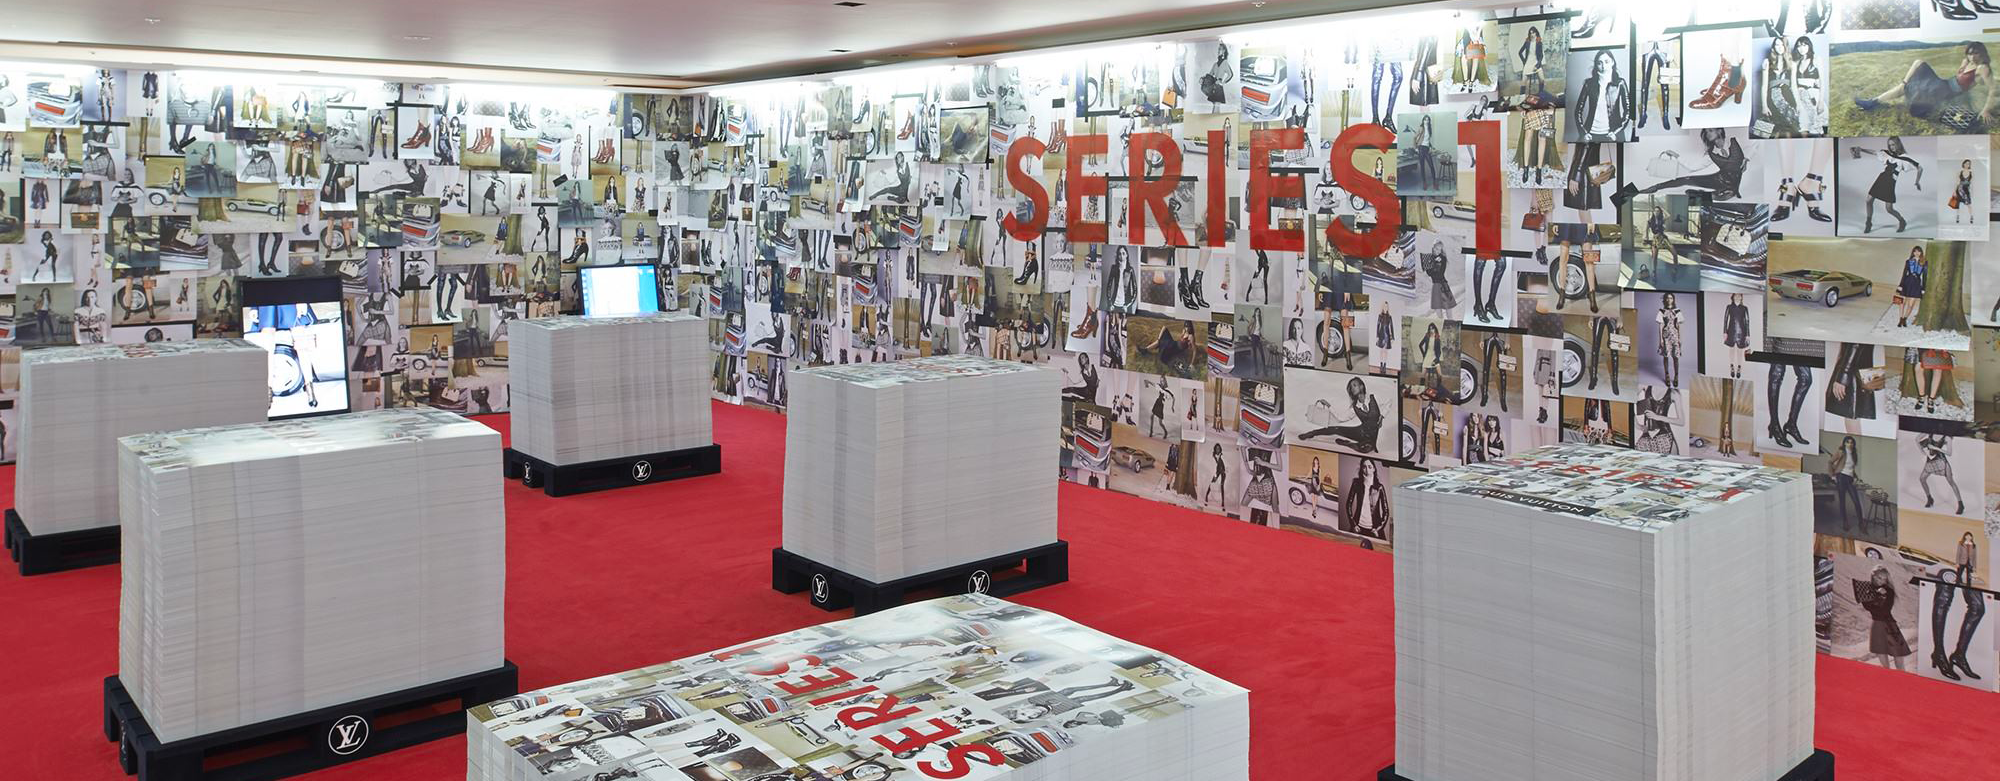 Louis Vuitton Takes Exhibition To Shanghai